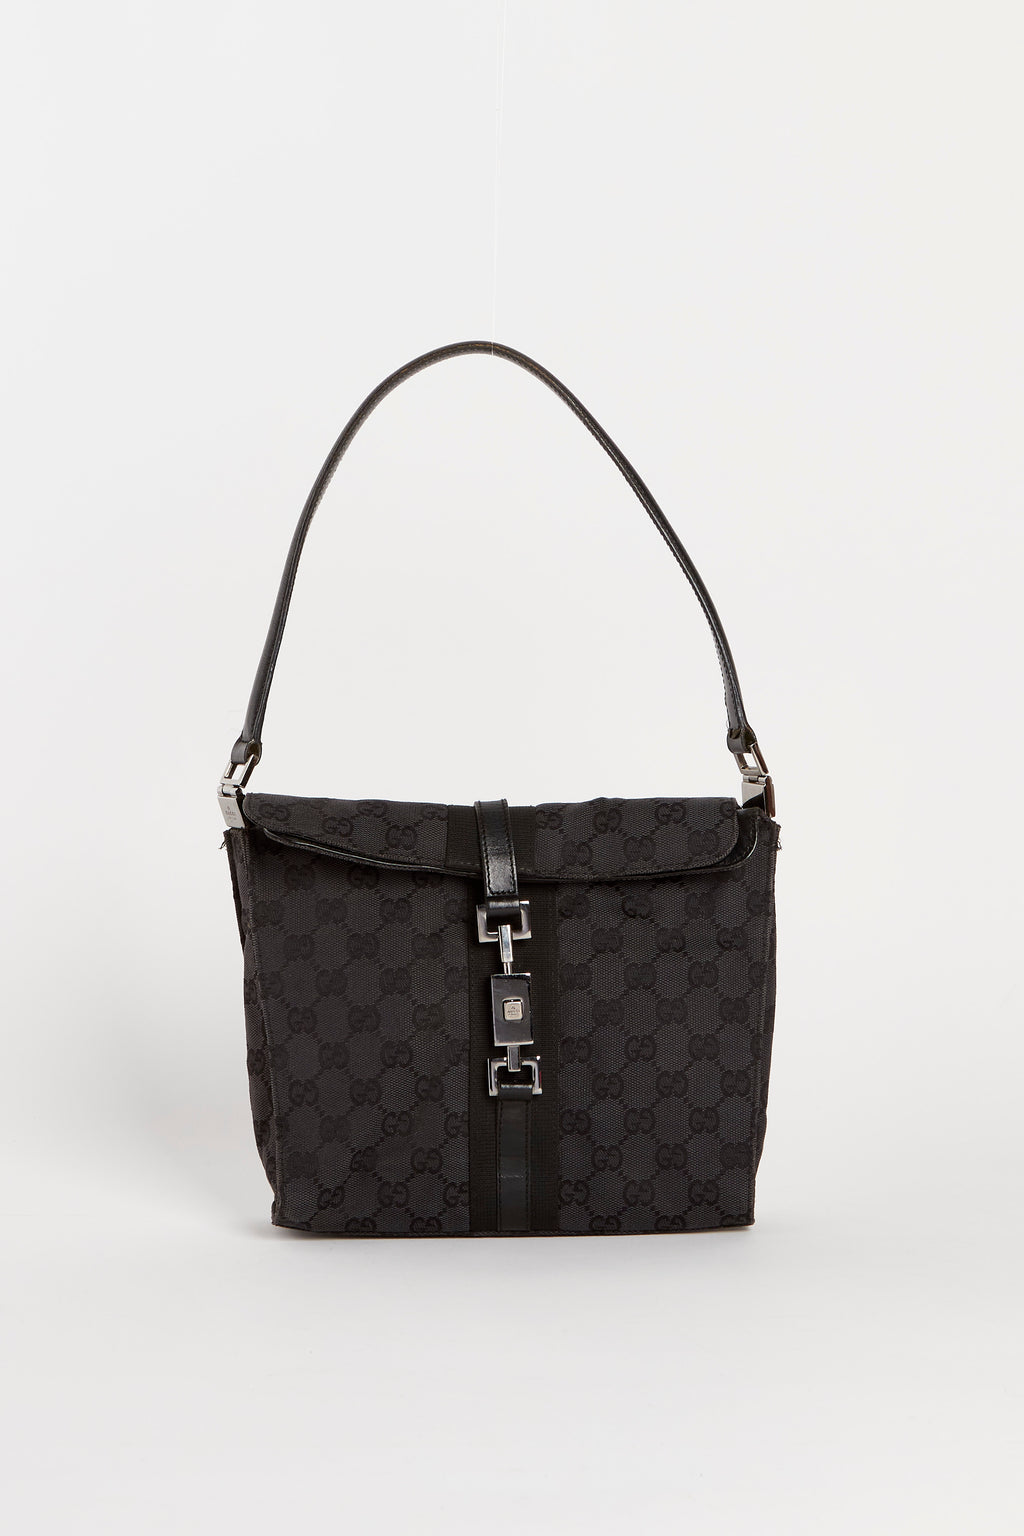 Vintage Gucci Black GG Monogram Shoulder Bag